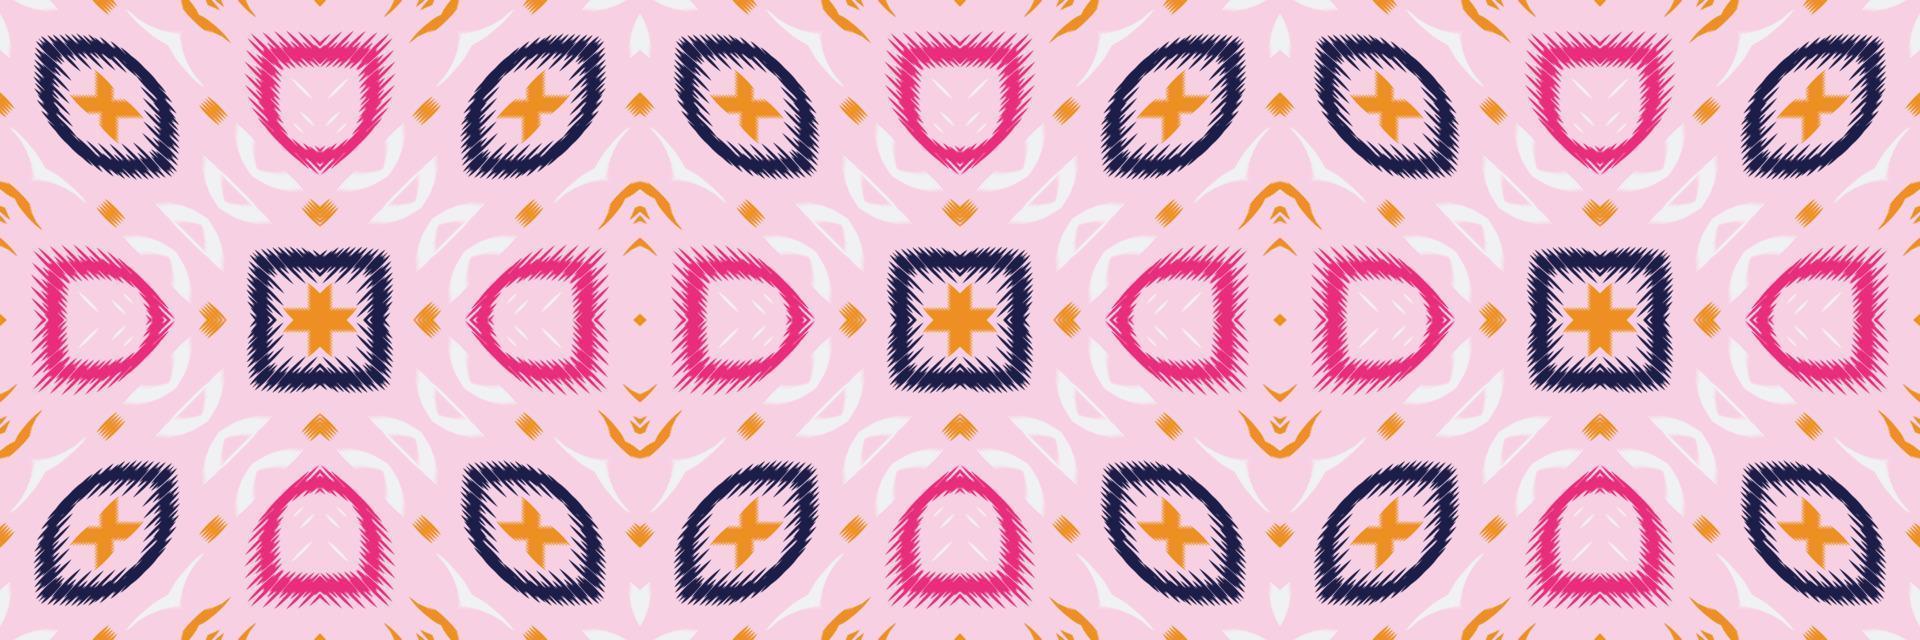 batik têxtil étnico ikat listras sem costura padrão design de vetor digital para impressão saree kurti borneo tecido borda escova símbolos amostras roupas de festa